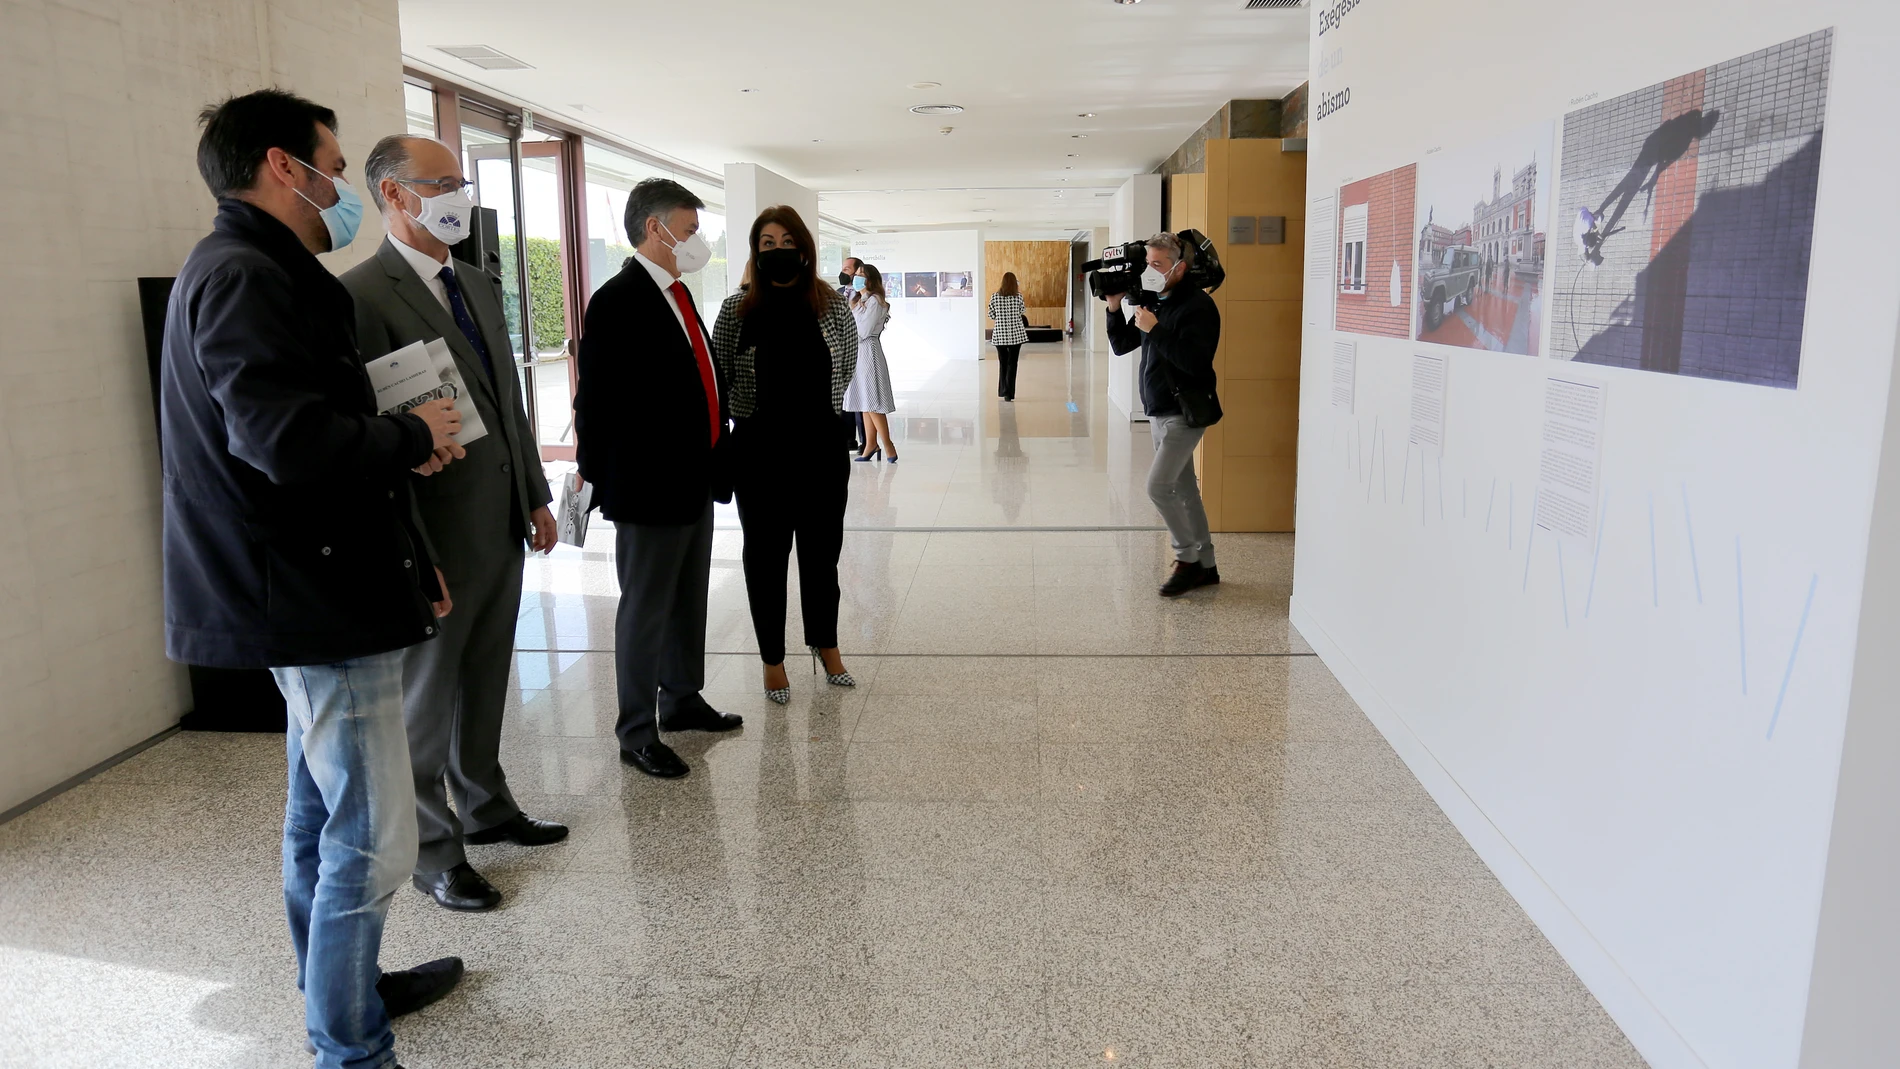 El presidente de las Cortes de Castilla y León, Luis Fuentes, presenta el anuario gráfico ‘2020’ y su correspondiente exposición, en cuya elaboración participan varios fotoperiodistas y redactores de los medios de comunicación de la Comunidad